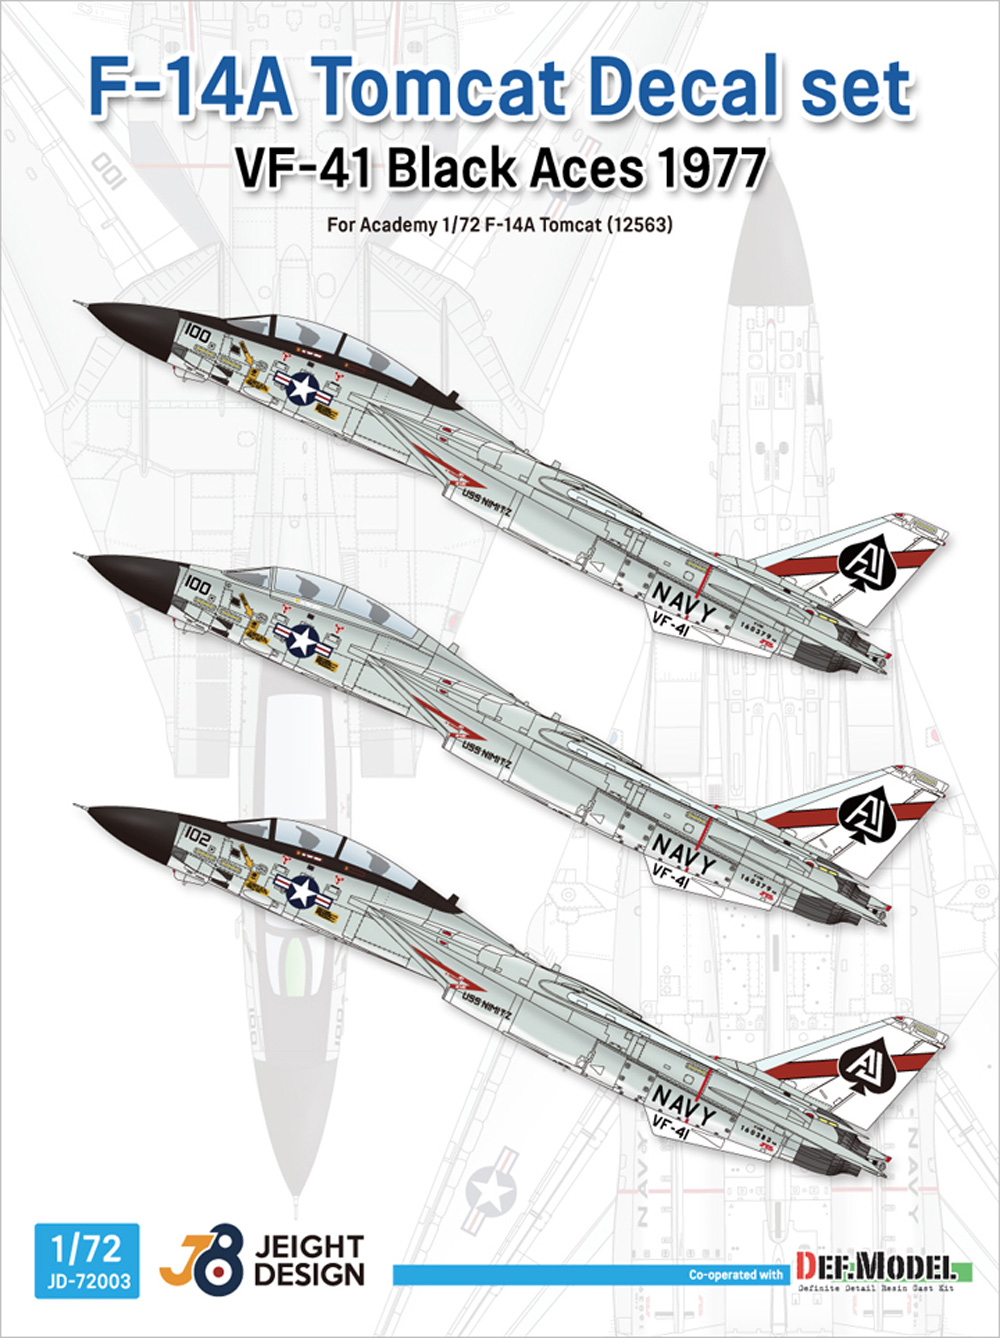 F-14A デカールセット VF-41 ブラックエース 1977 (アカデミー用) デカール (DEF. MODEL デカール No.JD72003) 商品画像_1